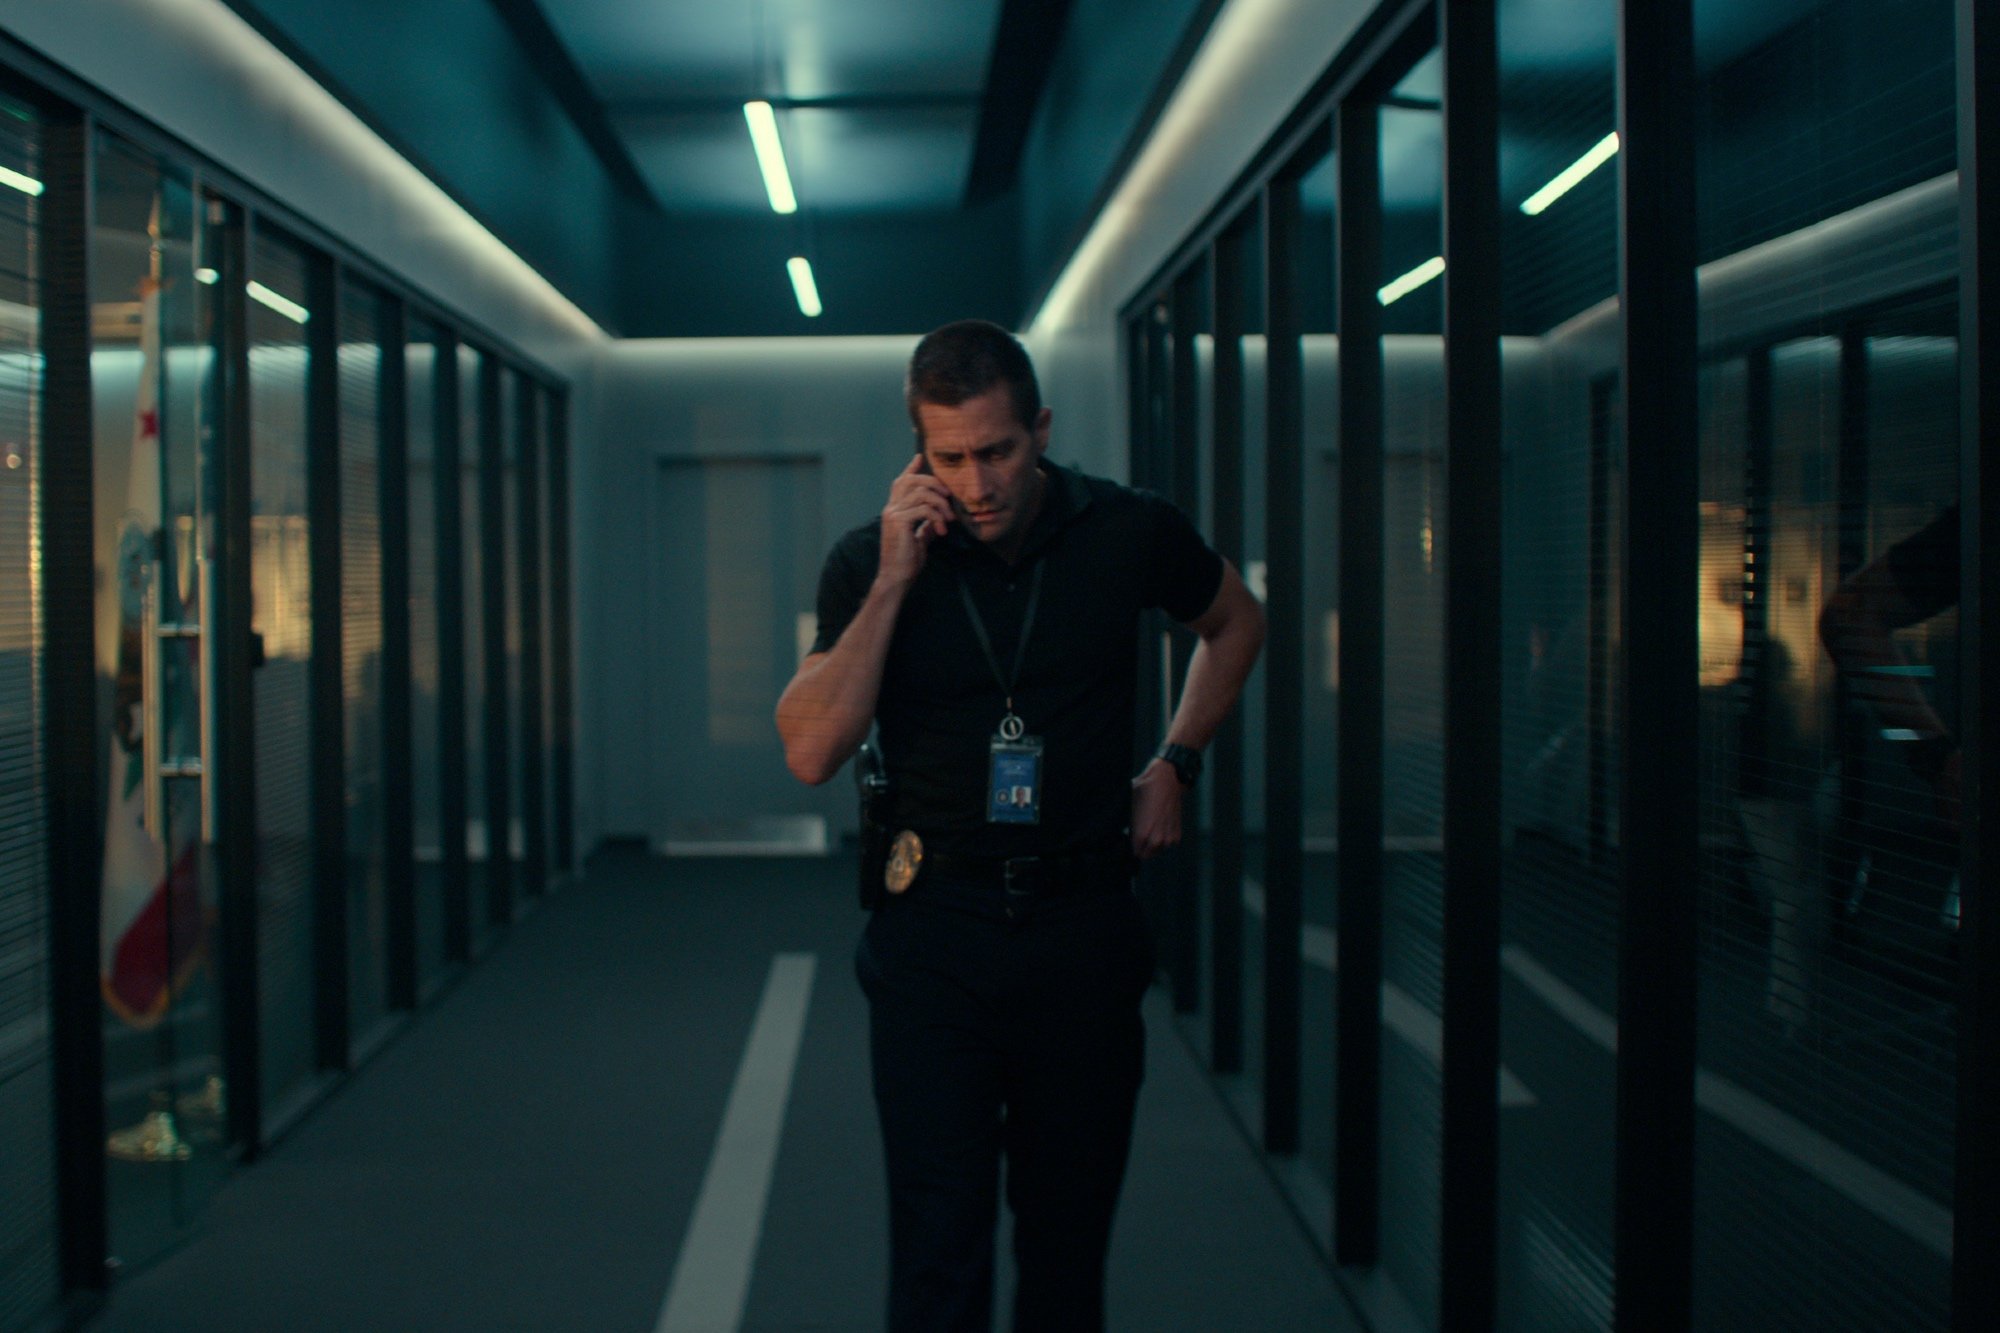 'The Guilty' actor Jake Gyllenhaal as Joe Bayler in the hallway on his phone